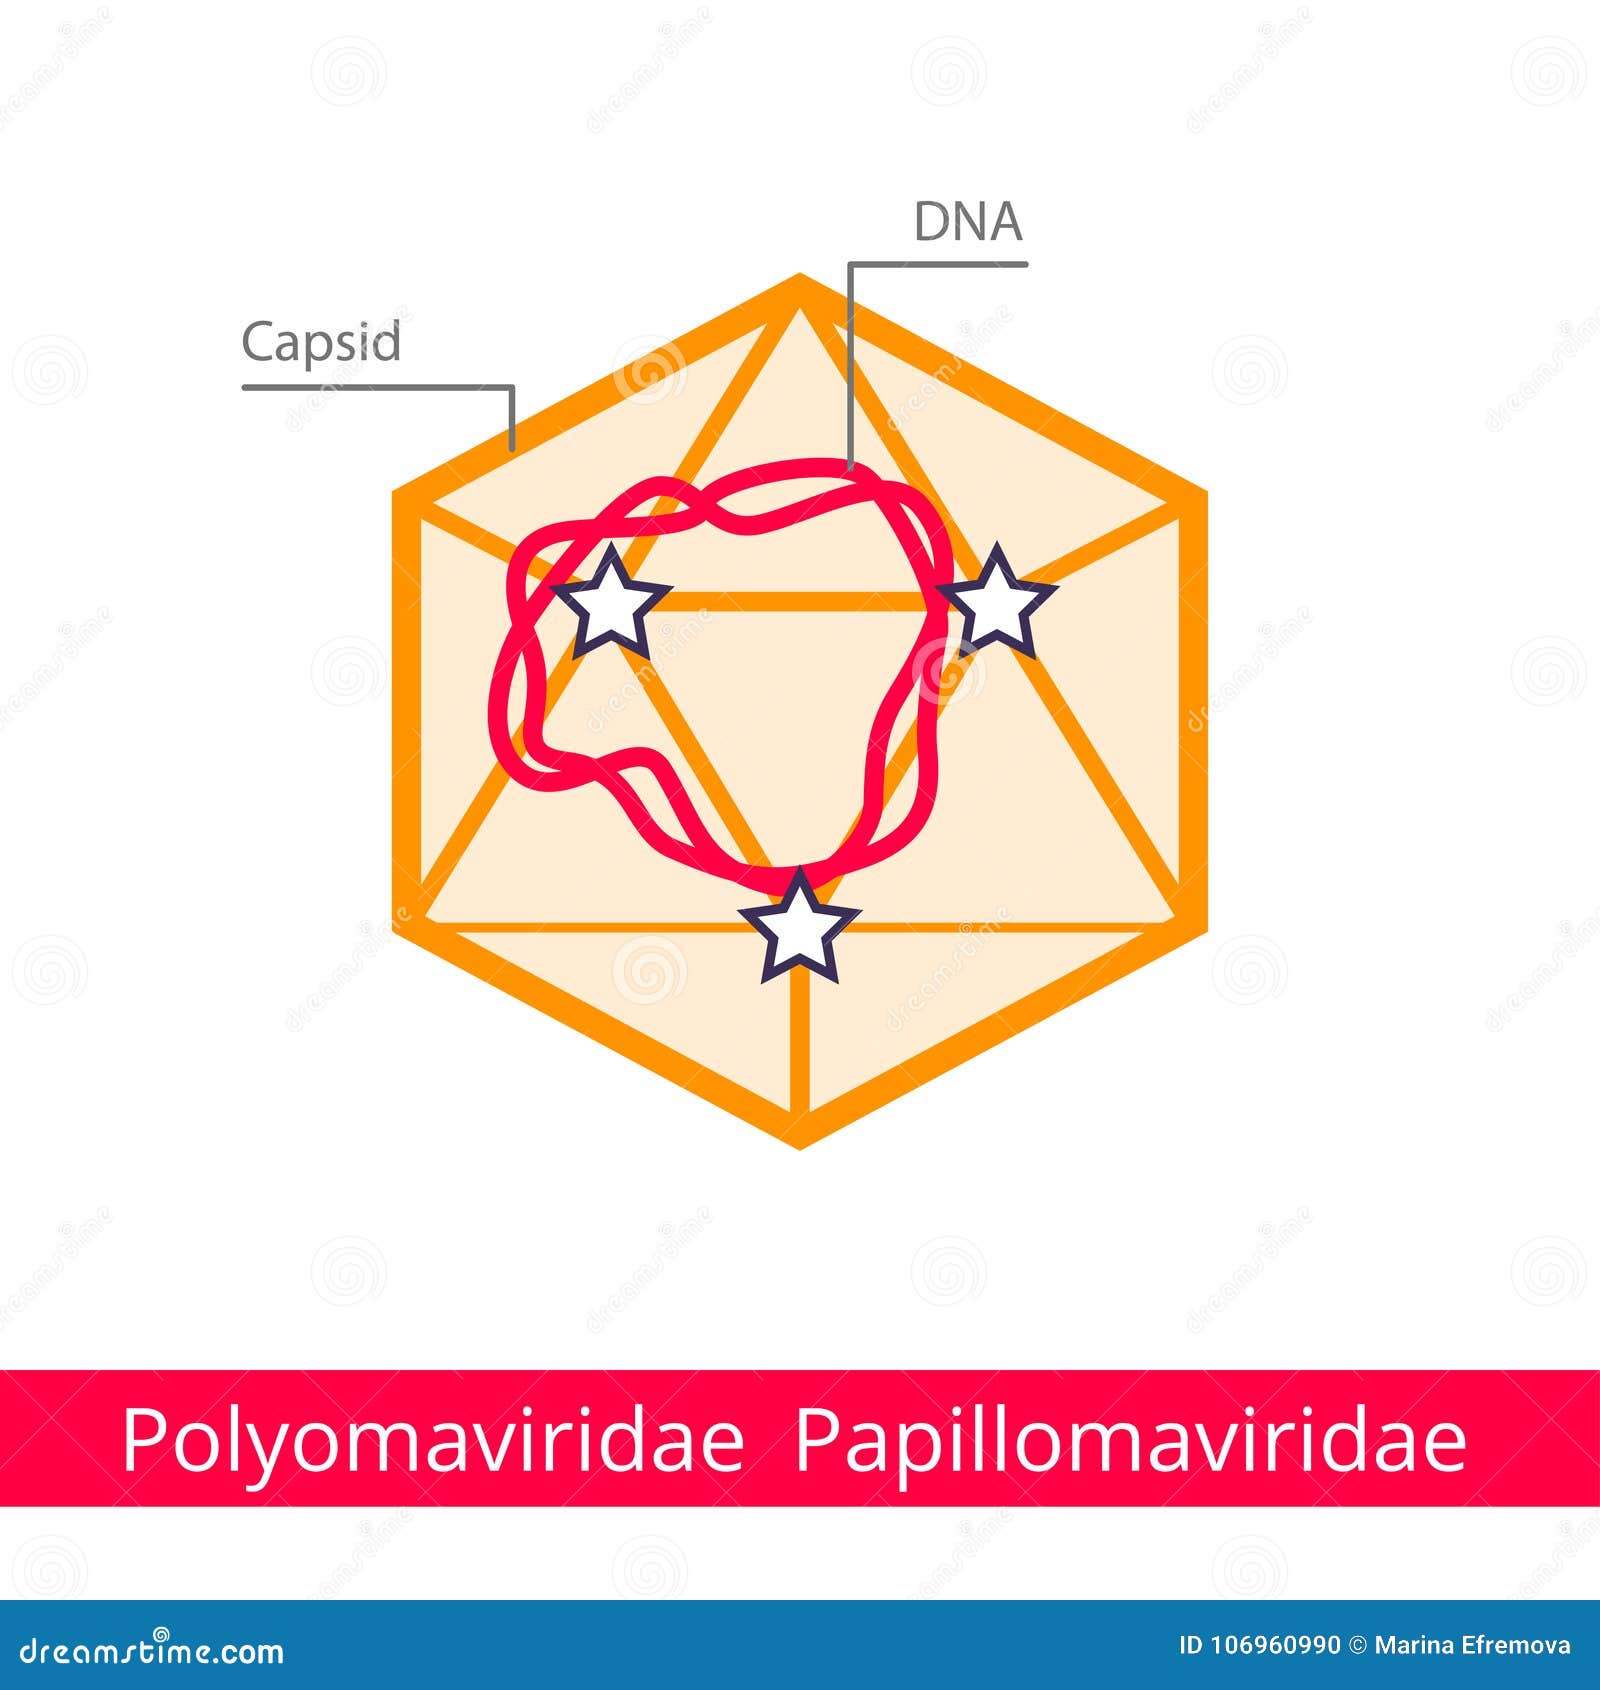 Papillomaviridae genome